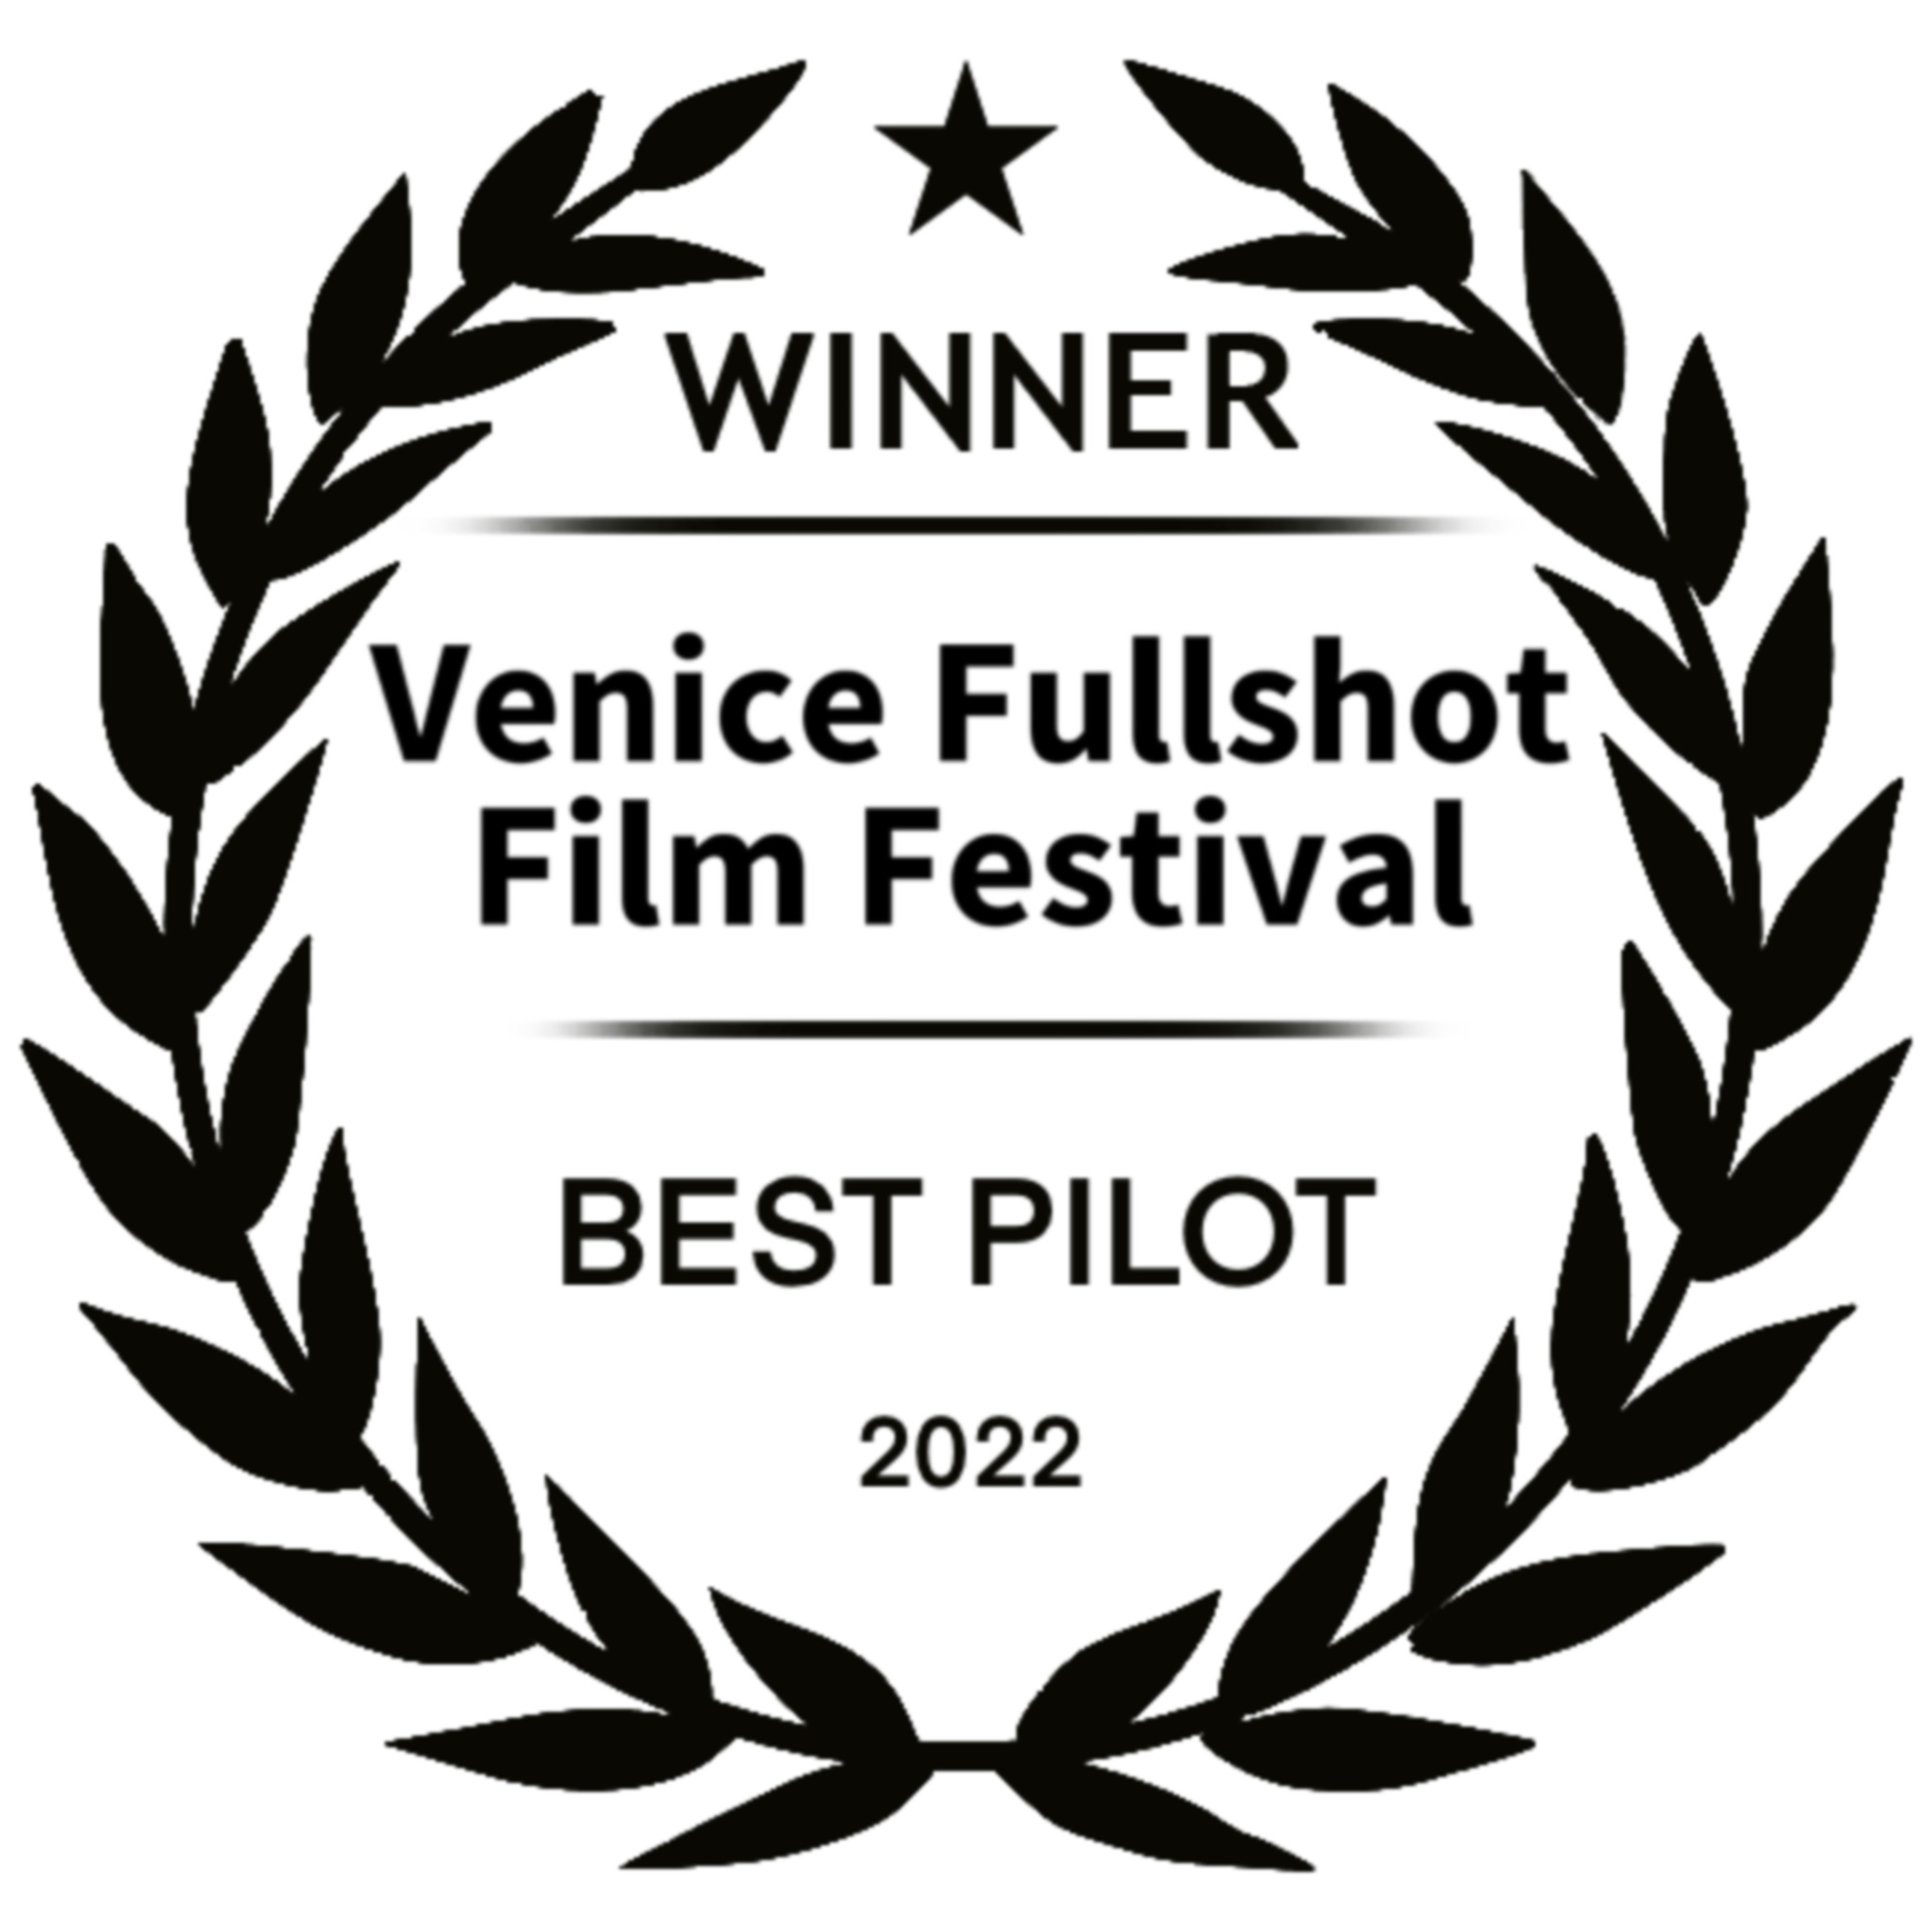 WINNER - Venice Fullshot Film Festival - BEST PILOT 2022